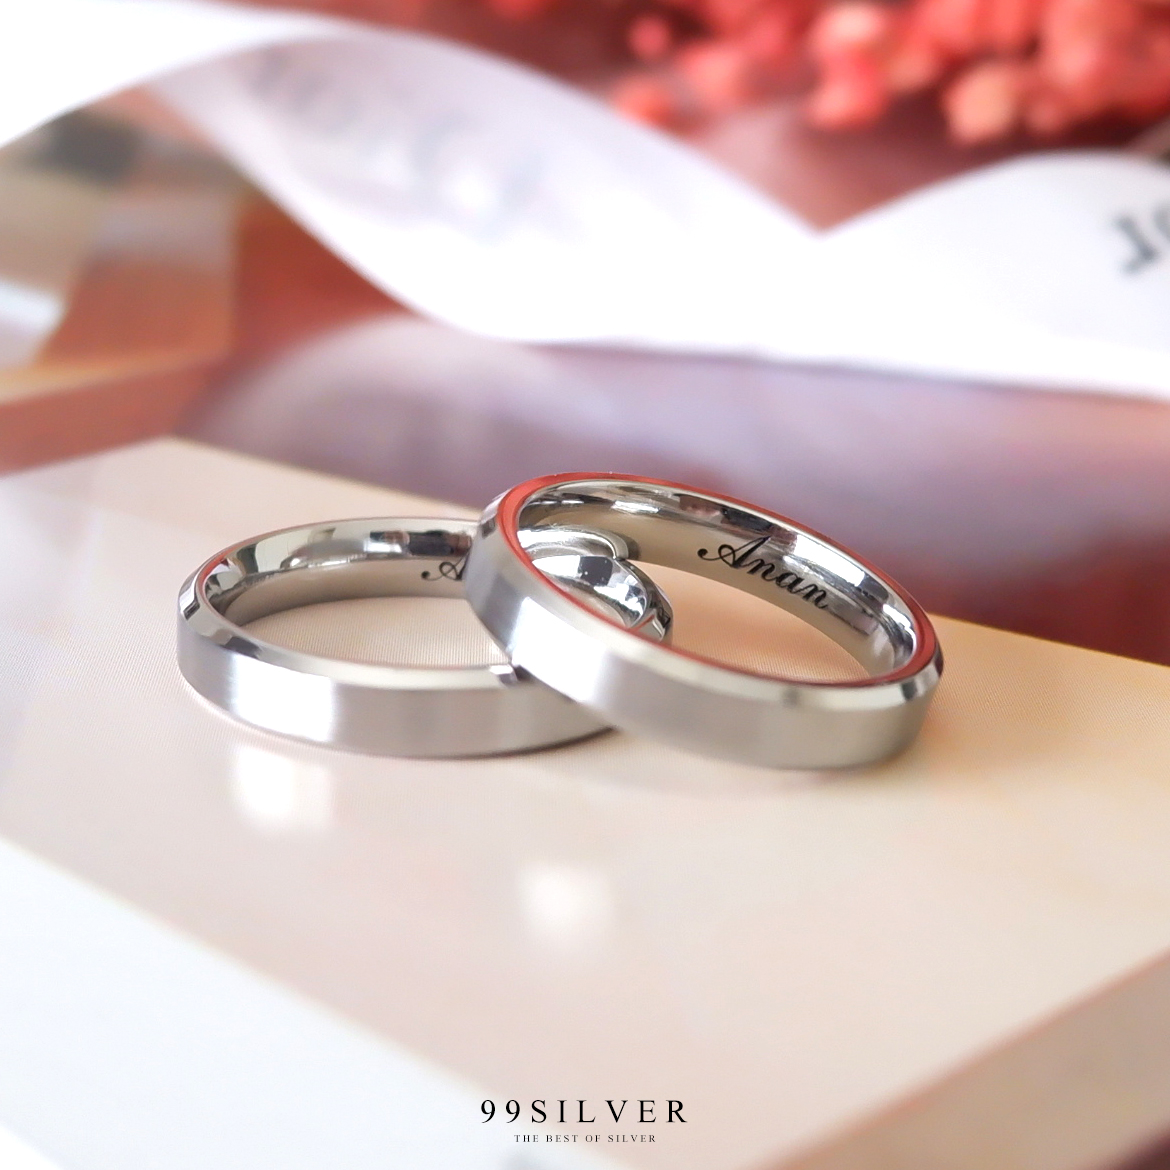 แหวนสแตนเลสแท้หน้ากว้าง 4 มิลลิเมตร ขอบลดมุมตัดสวยงาม ตัวเรือนสีเงินด้าน ขอบเงา